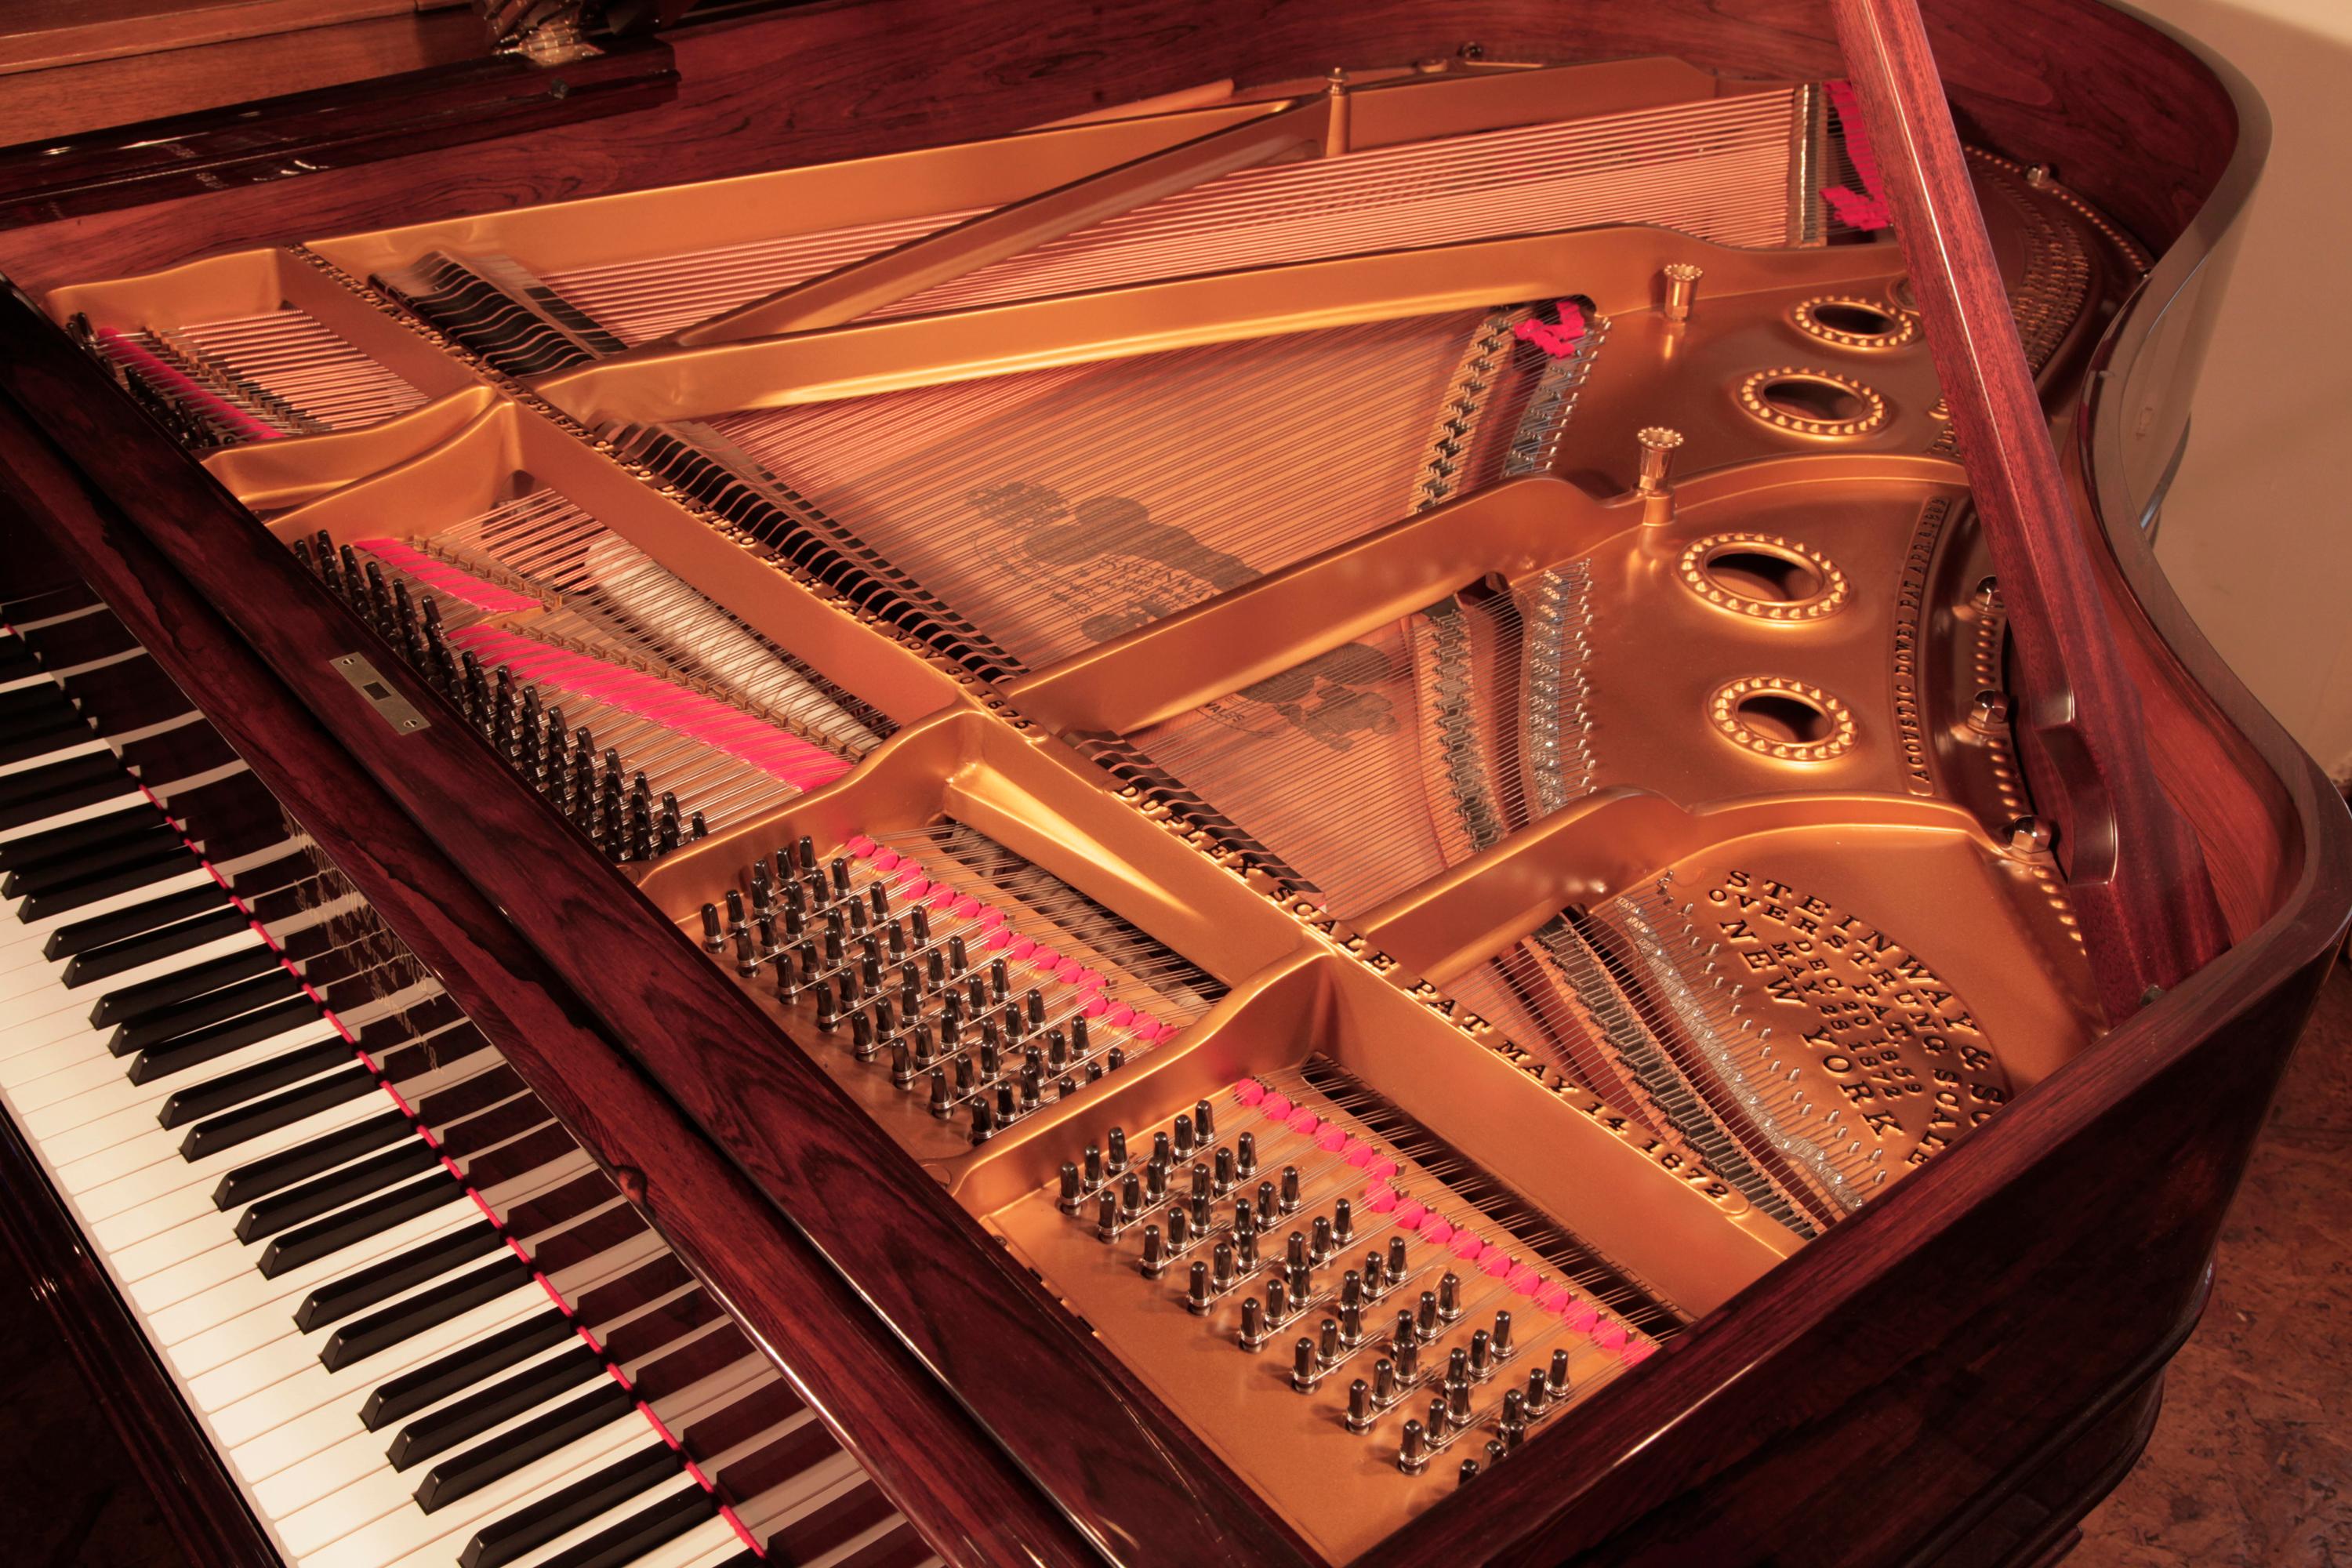 Piano à queue Steinway modèle A reconstruit en 1878  avec un boîtier en bois de rose contrasté et des accessoires en laiton. Le piano possède un clavier de quatre-vingt-cinq notes et une lyre à trois pédales.
 
La lyre de piano comporte deux